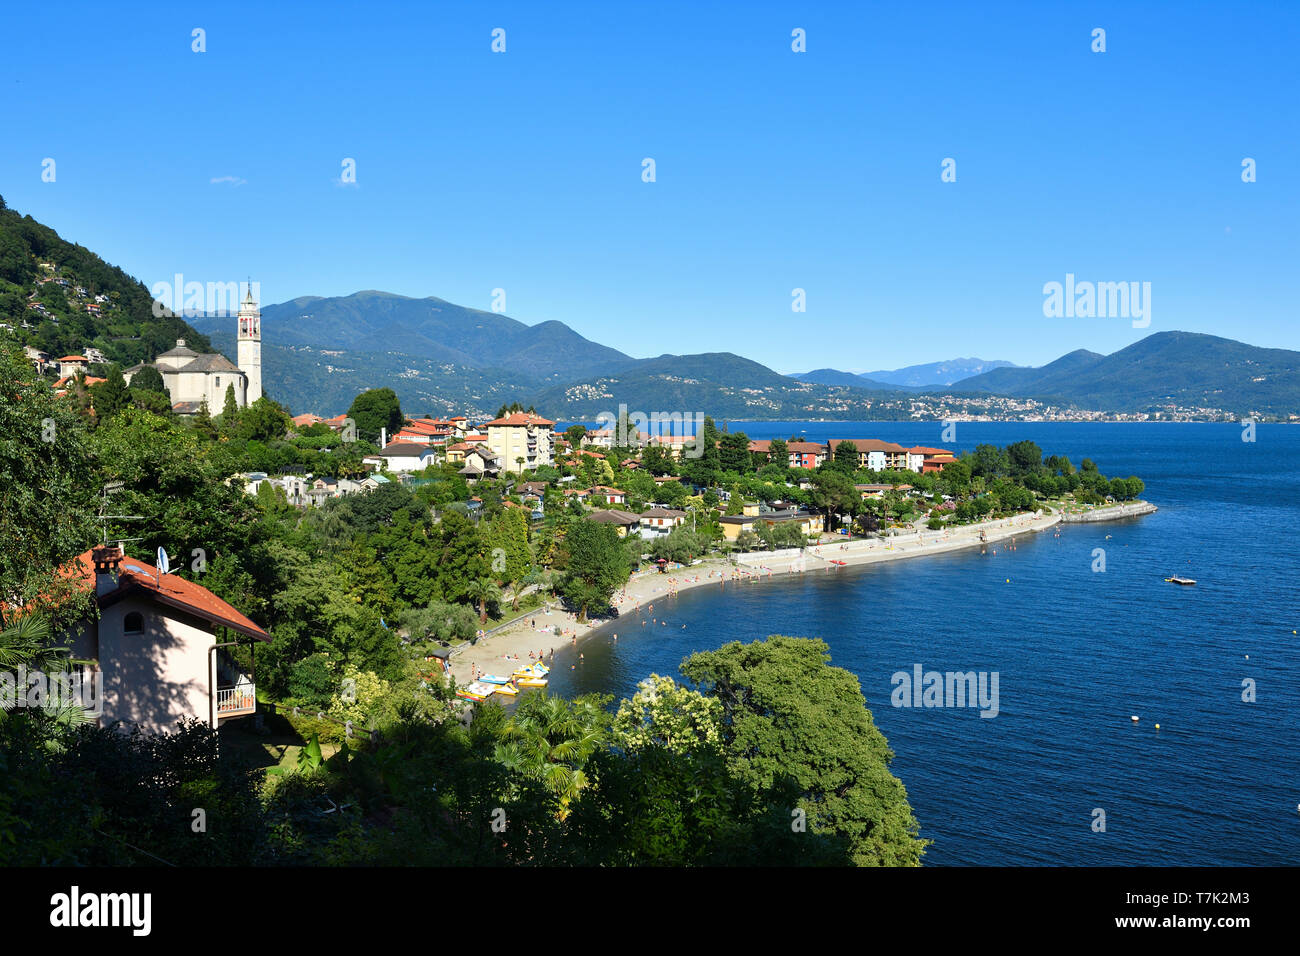 Italy, Piedmont, Stresa, Lake Maggiore (Il Lago Maggiore), Cannero Riviera village Stock Photo